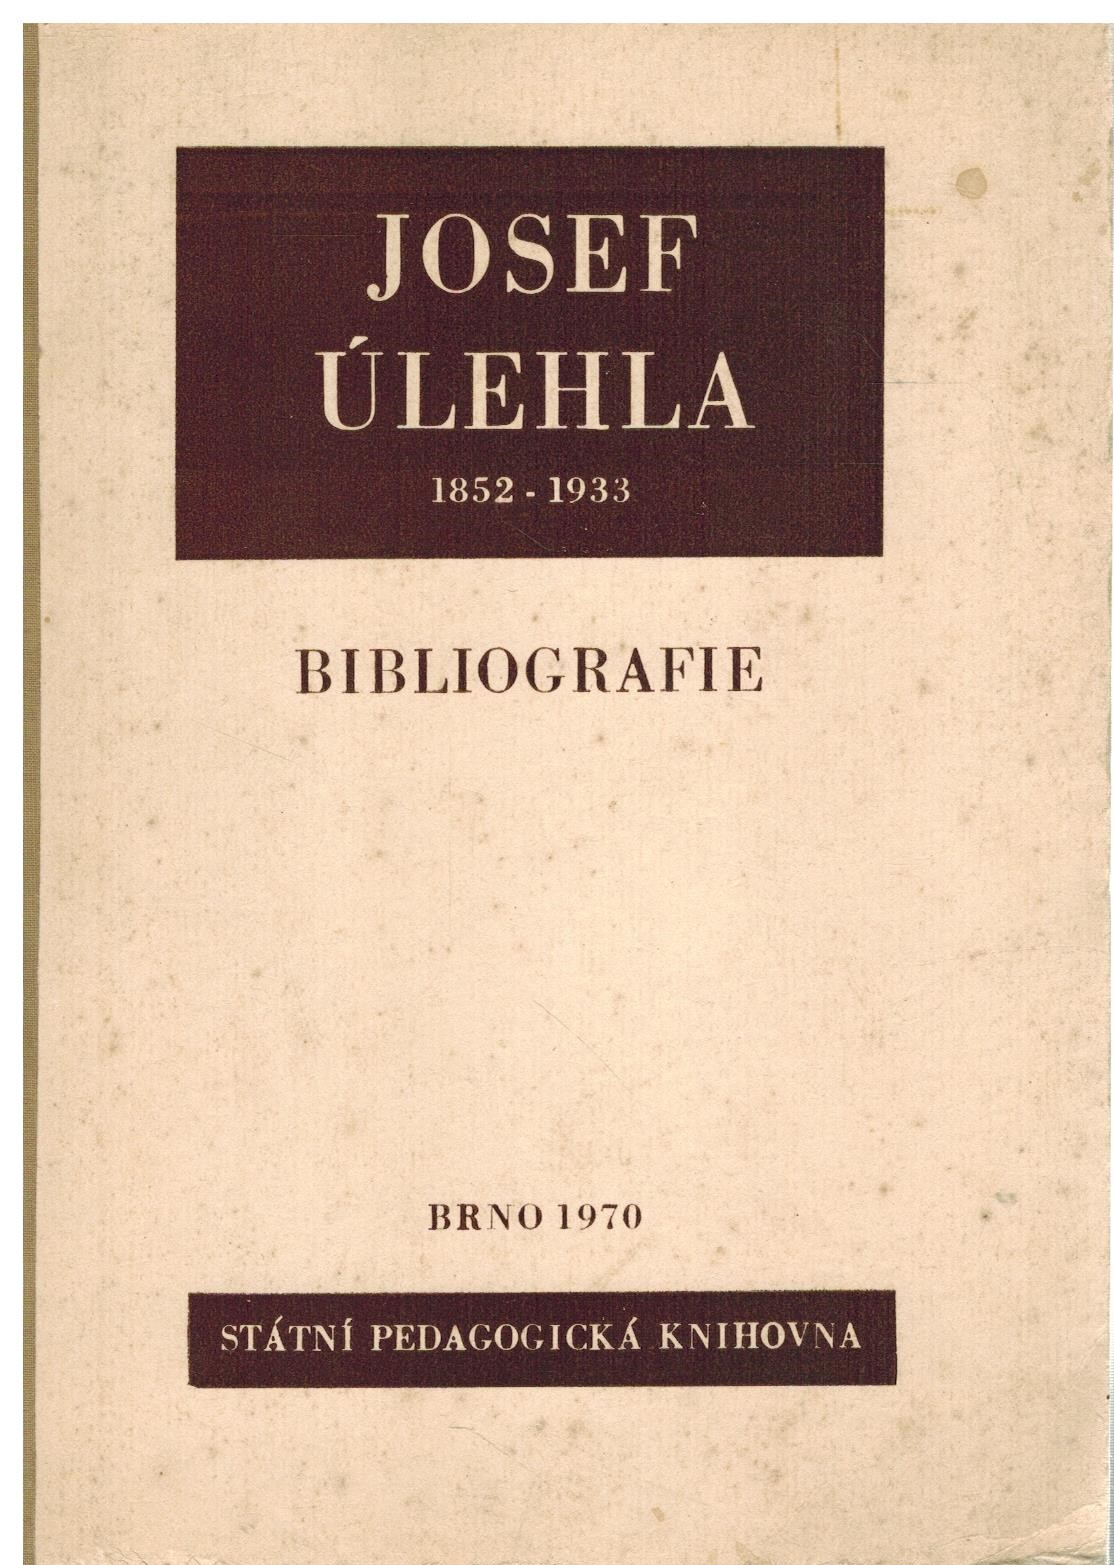 JOSEF ÚLEHLA 1852-1933